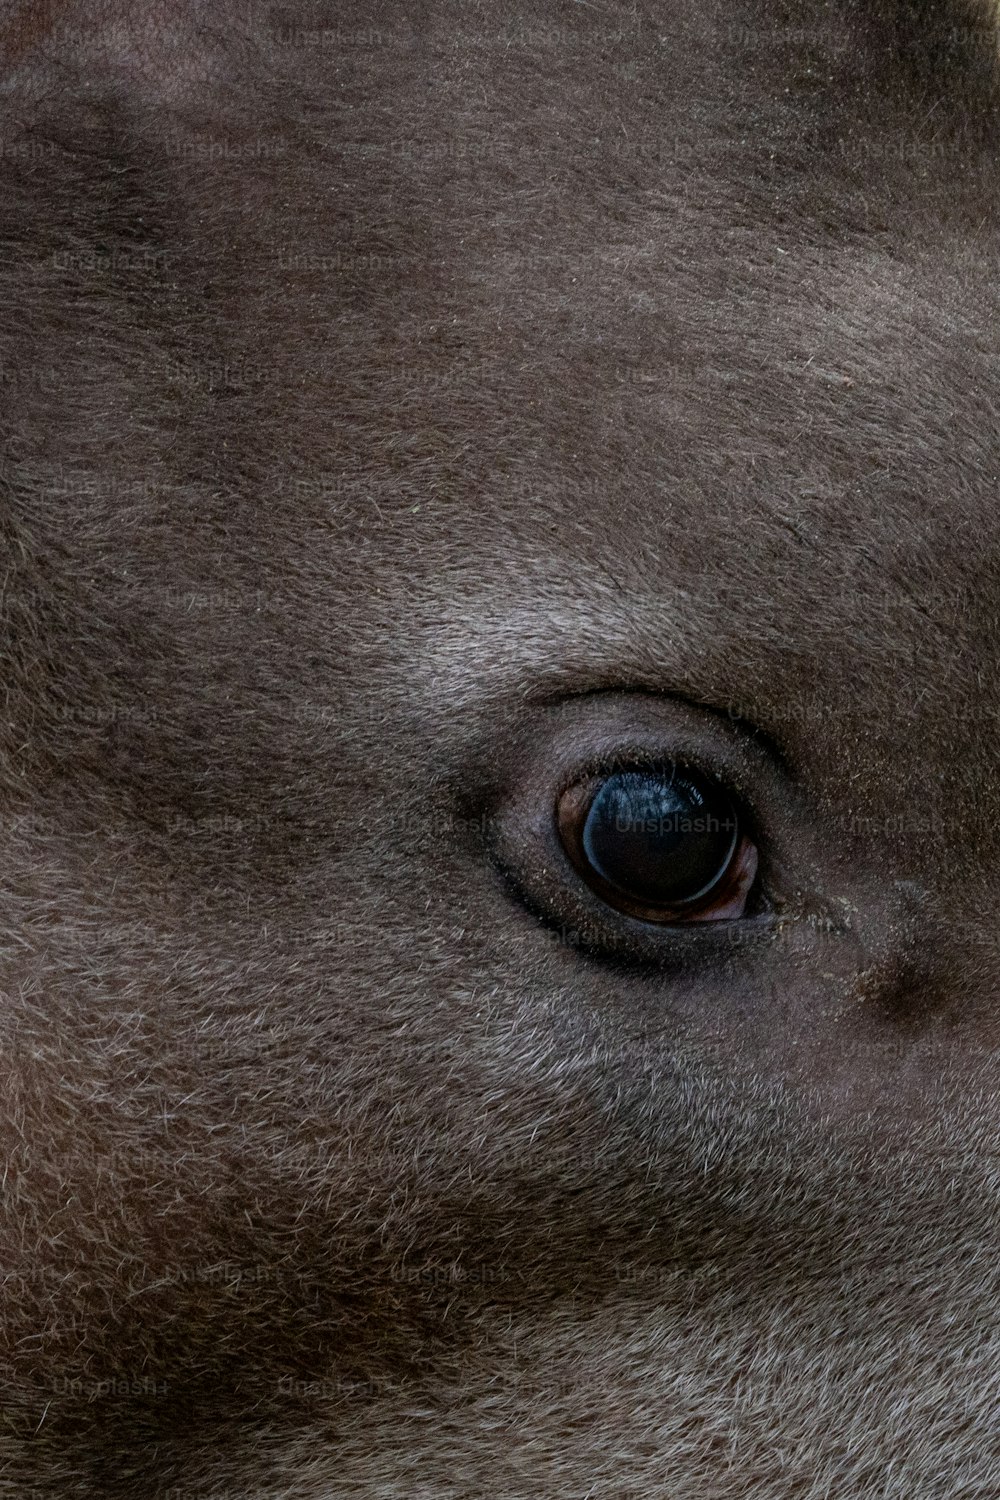 Un primer plano del ojo de un animal marrón